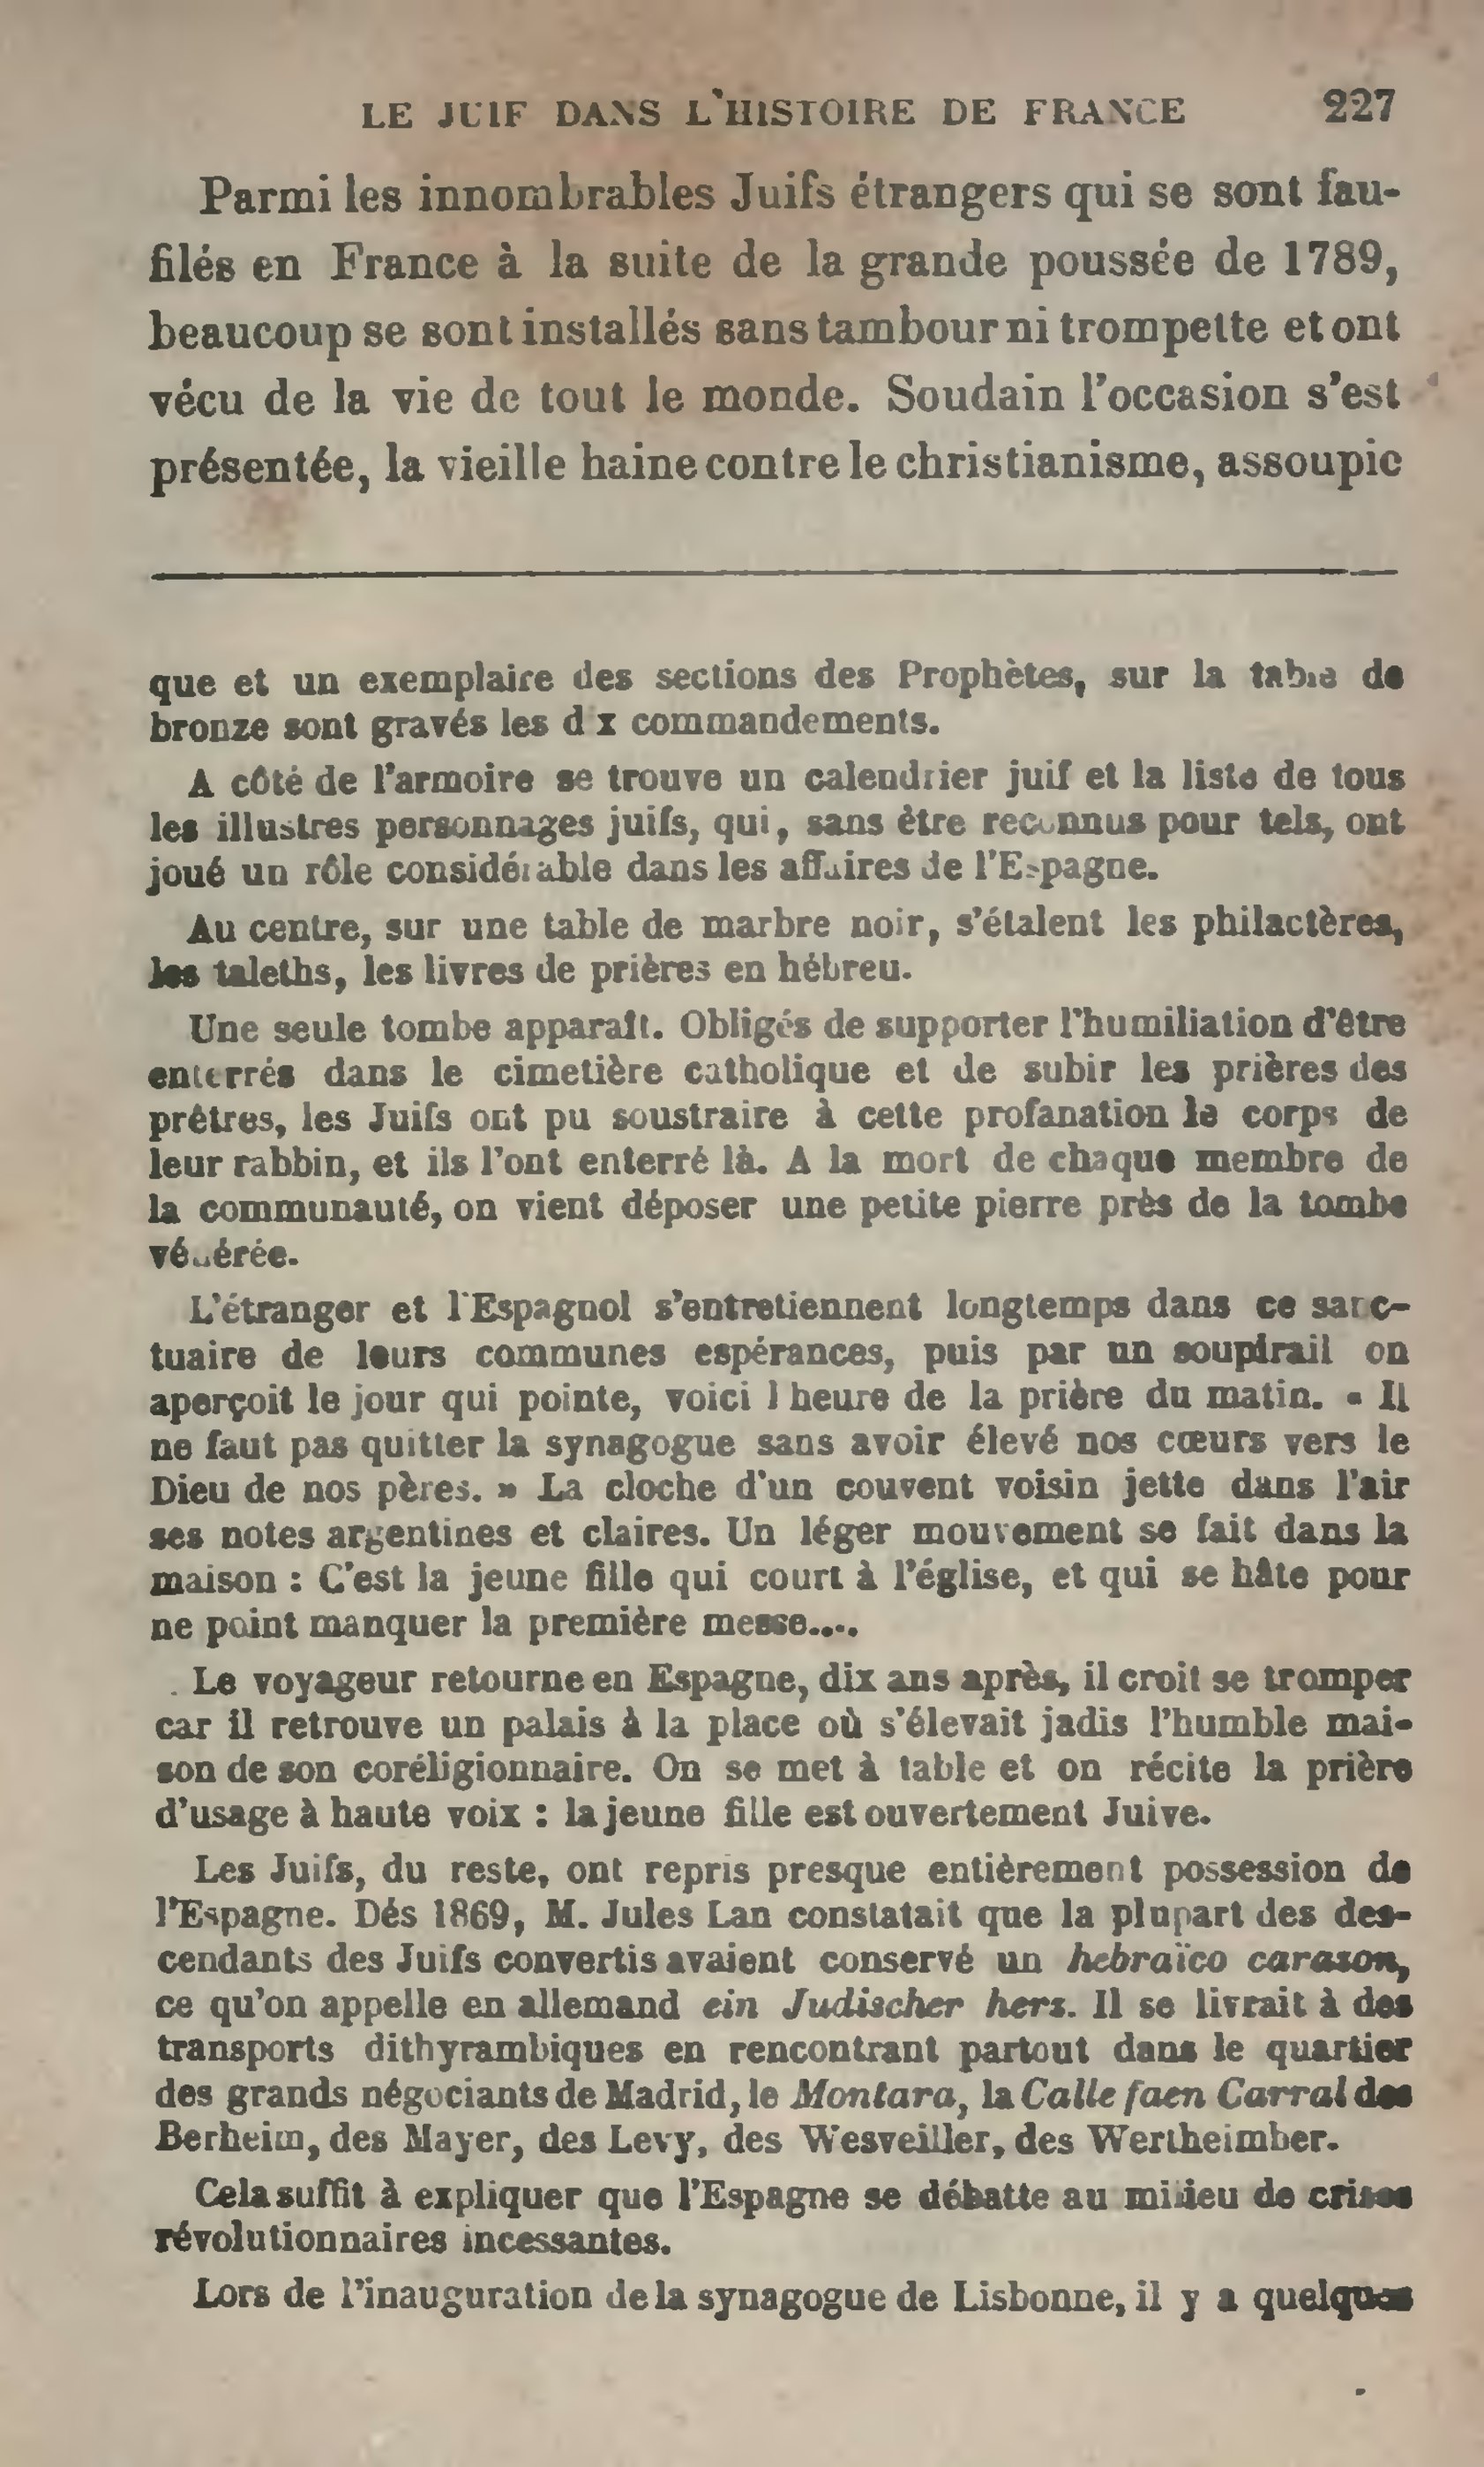 Livre:Drumont - La France juive, tome premier, 3eme édition, 1886.djvu -  Wikisource